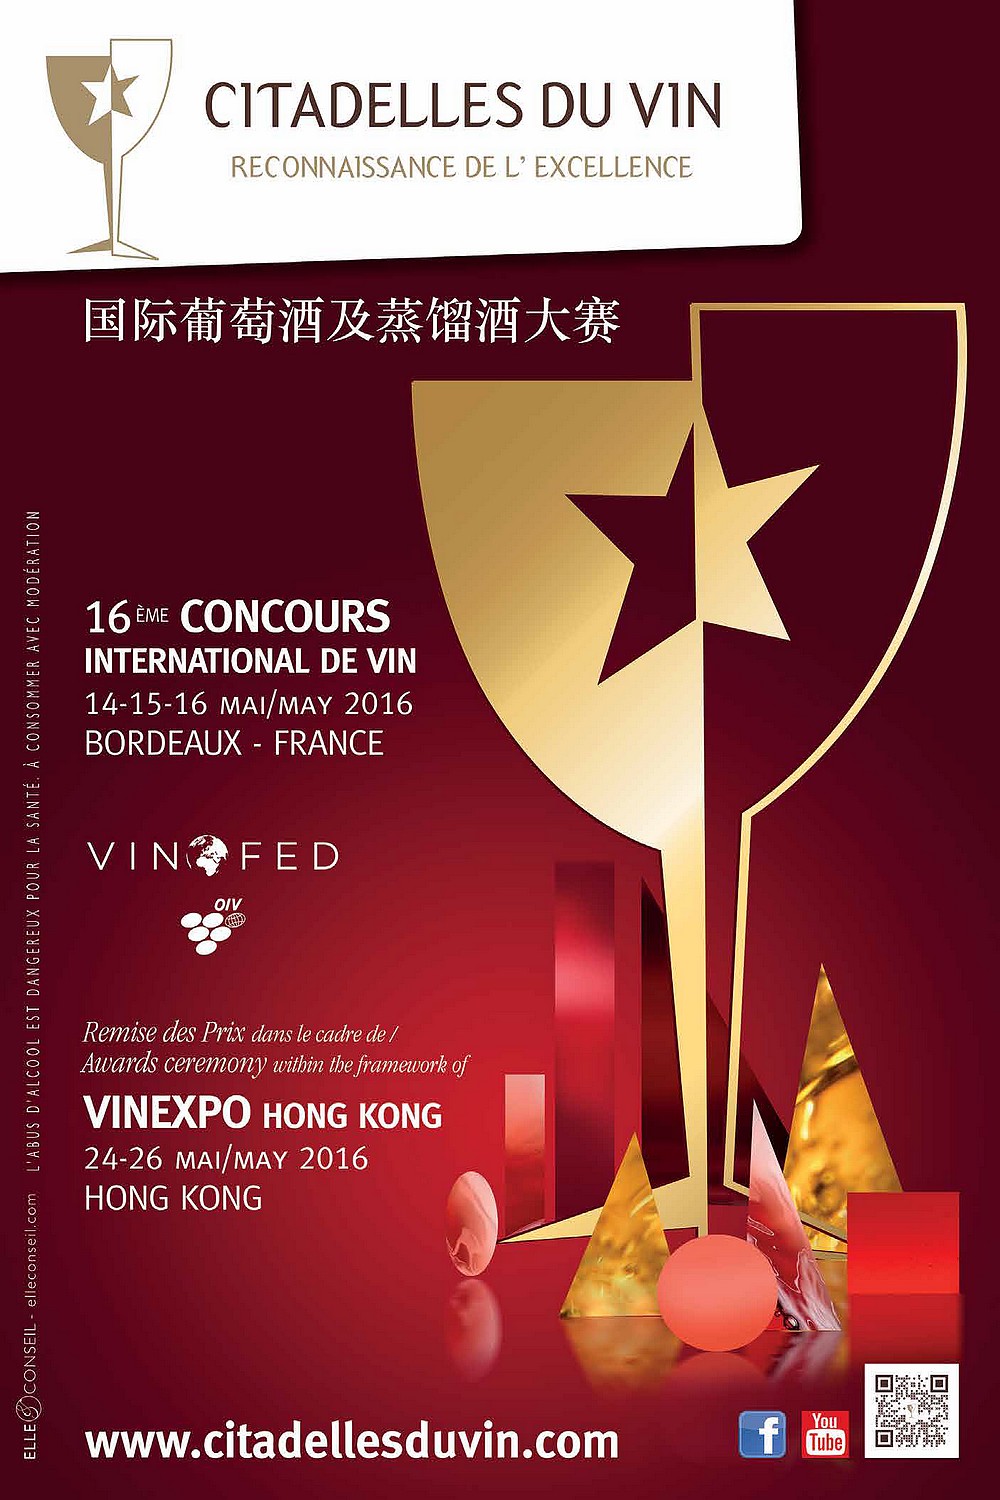 Citadelles du vin 2016 Bordeaux